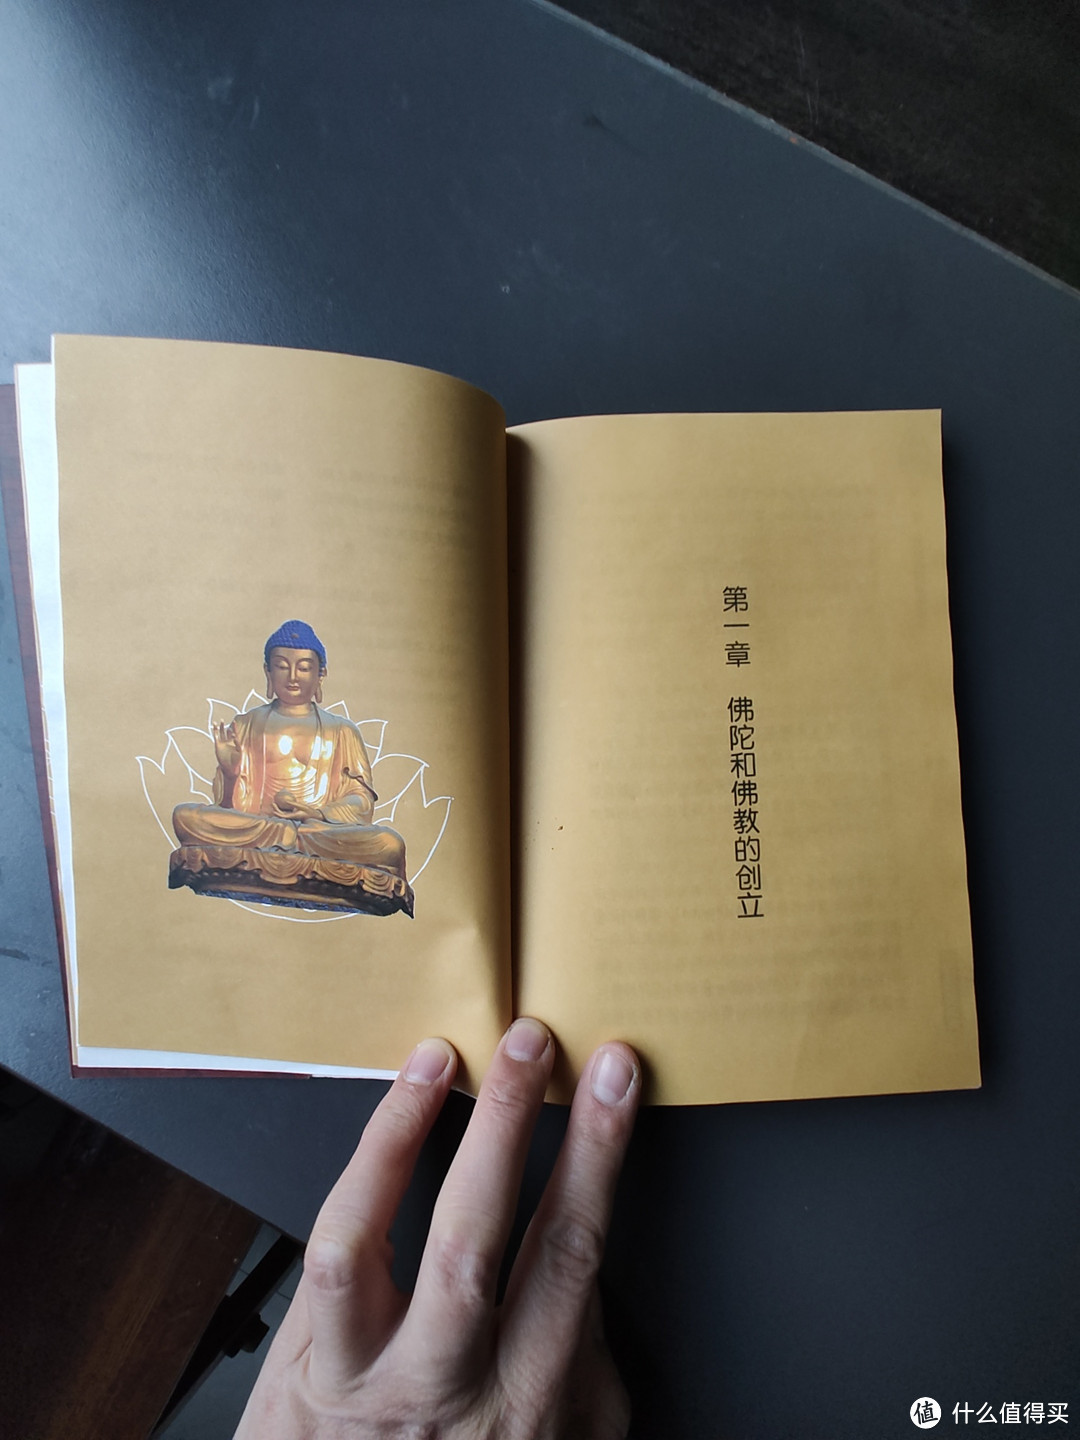 给有缘人赠书了，通过学习，我们可以从佛教中汲取智慧，提升自己的精神境界。我们如何从佛教学到修行？